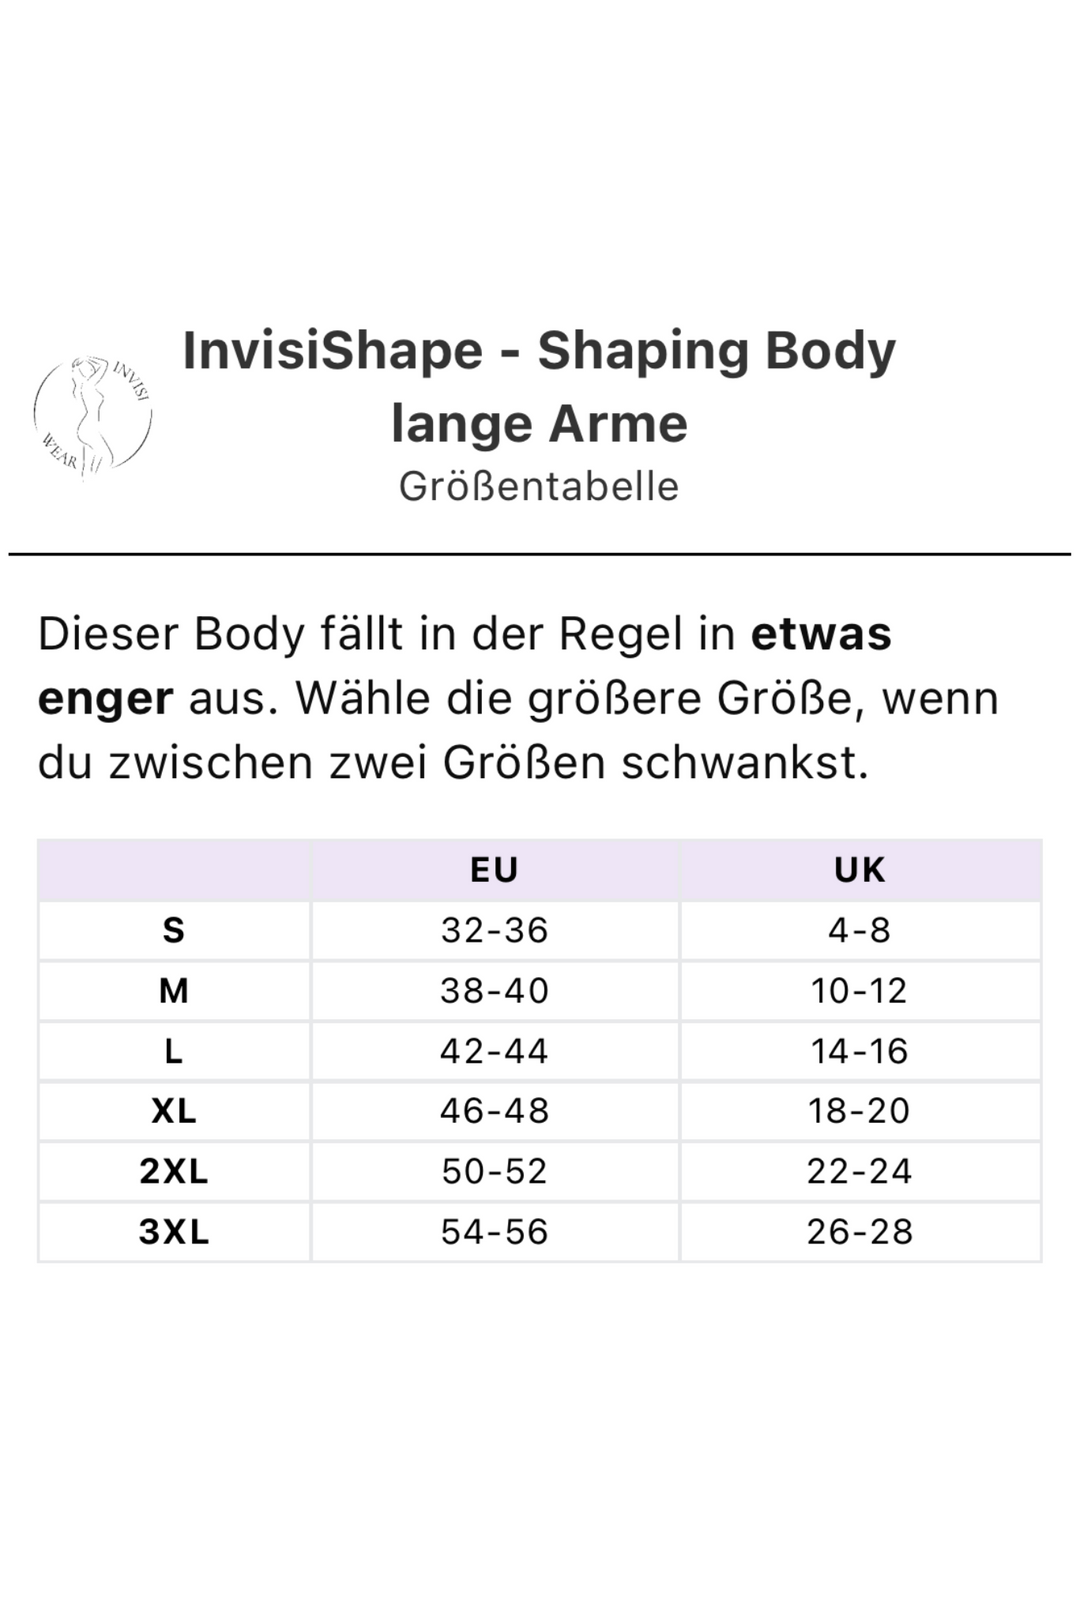 InvisiShape - Shaping Body lange Arme